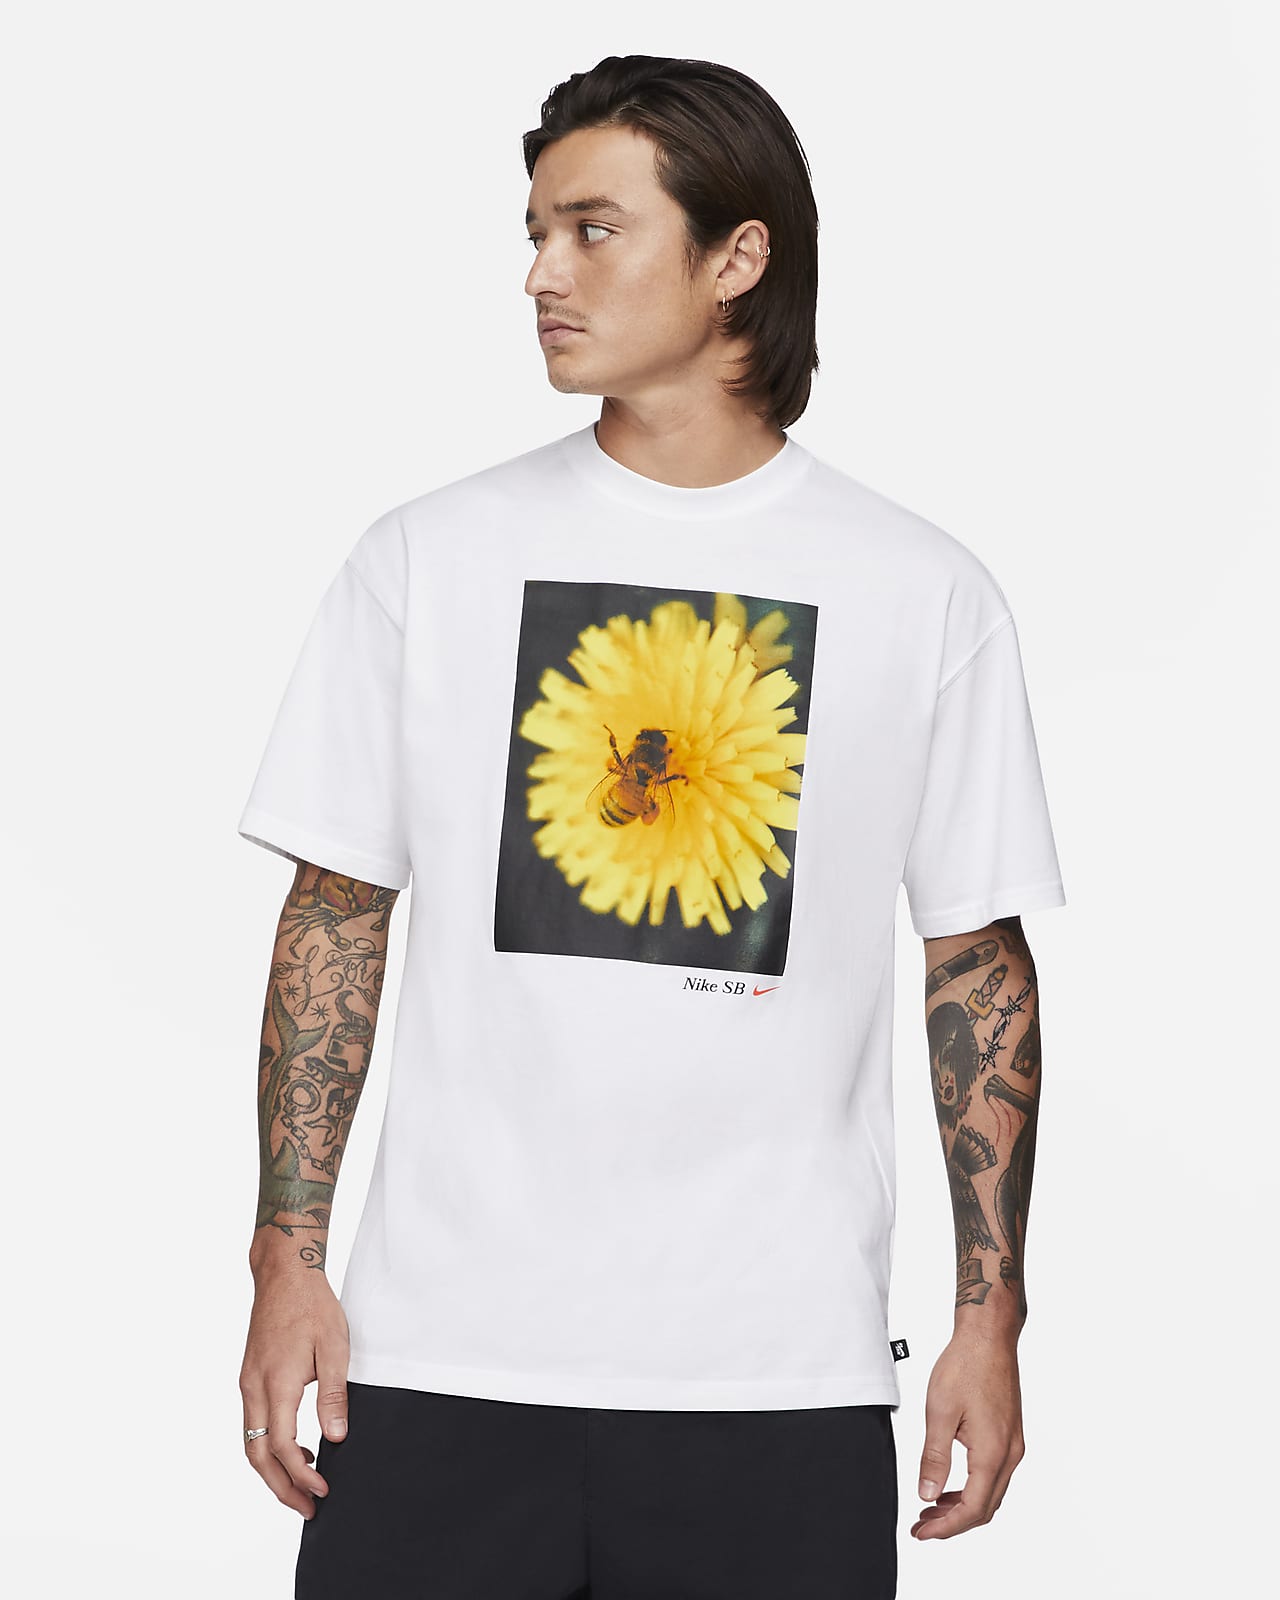 nike yellow flower shirt